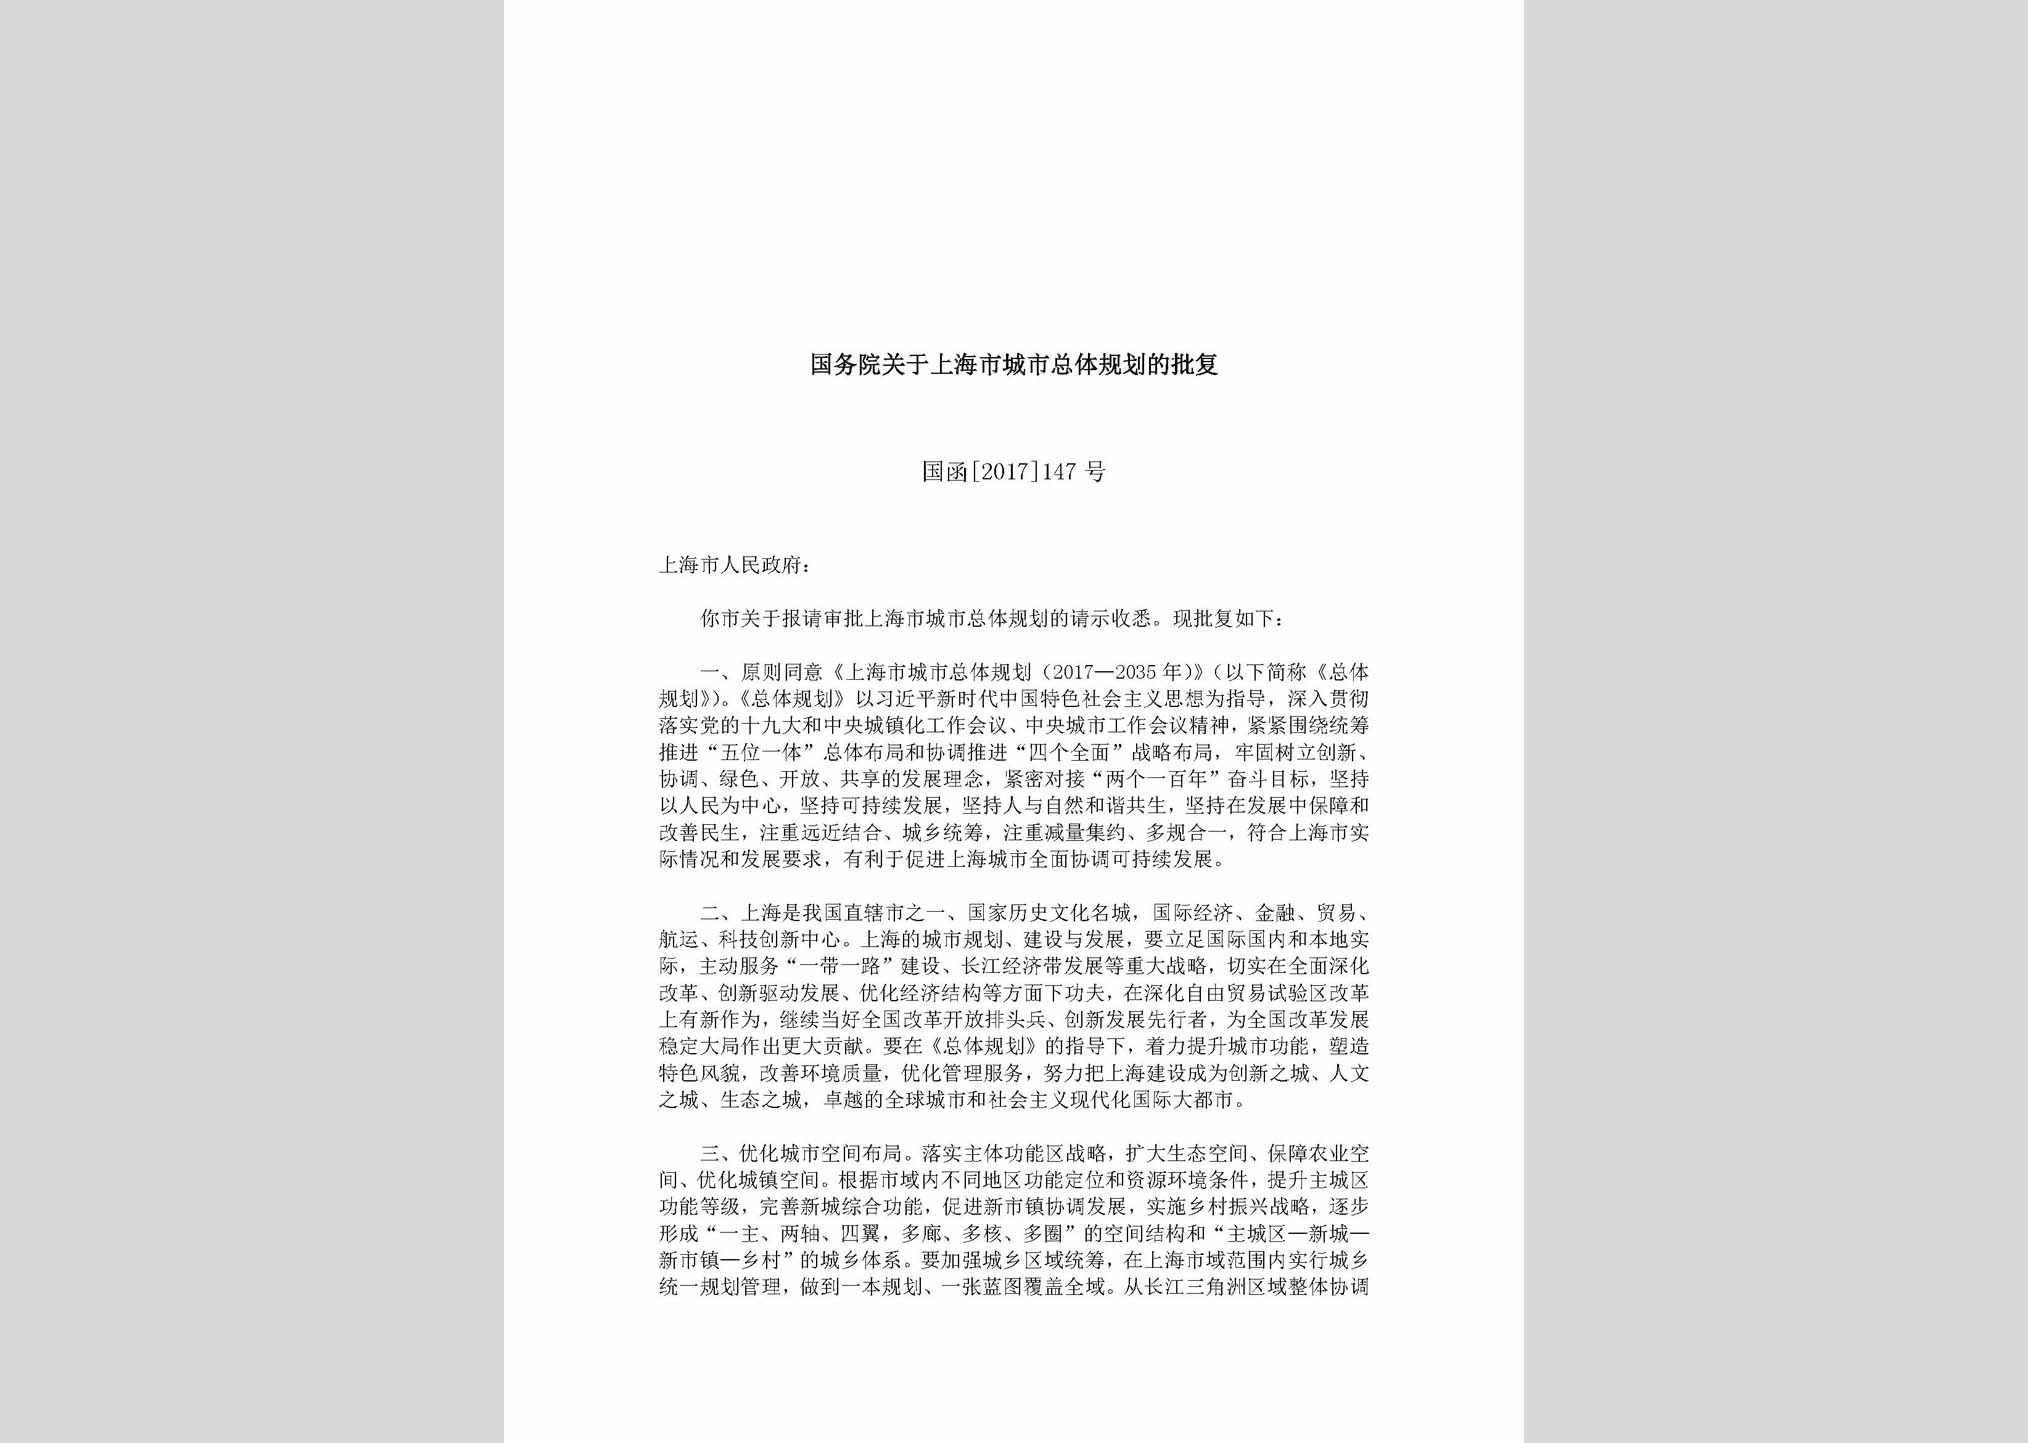 国函[2017]147号：国务院关于上海市城市总体规划的批复